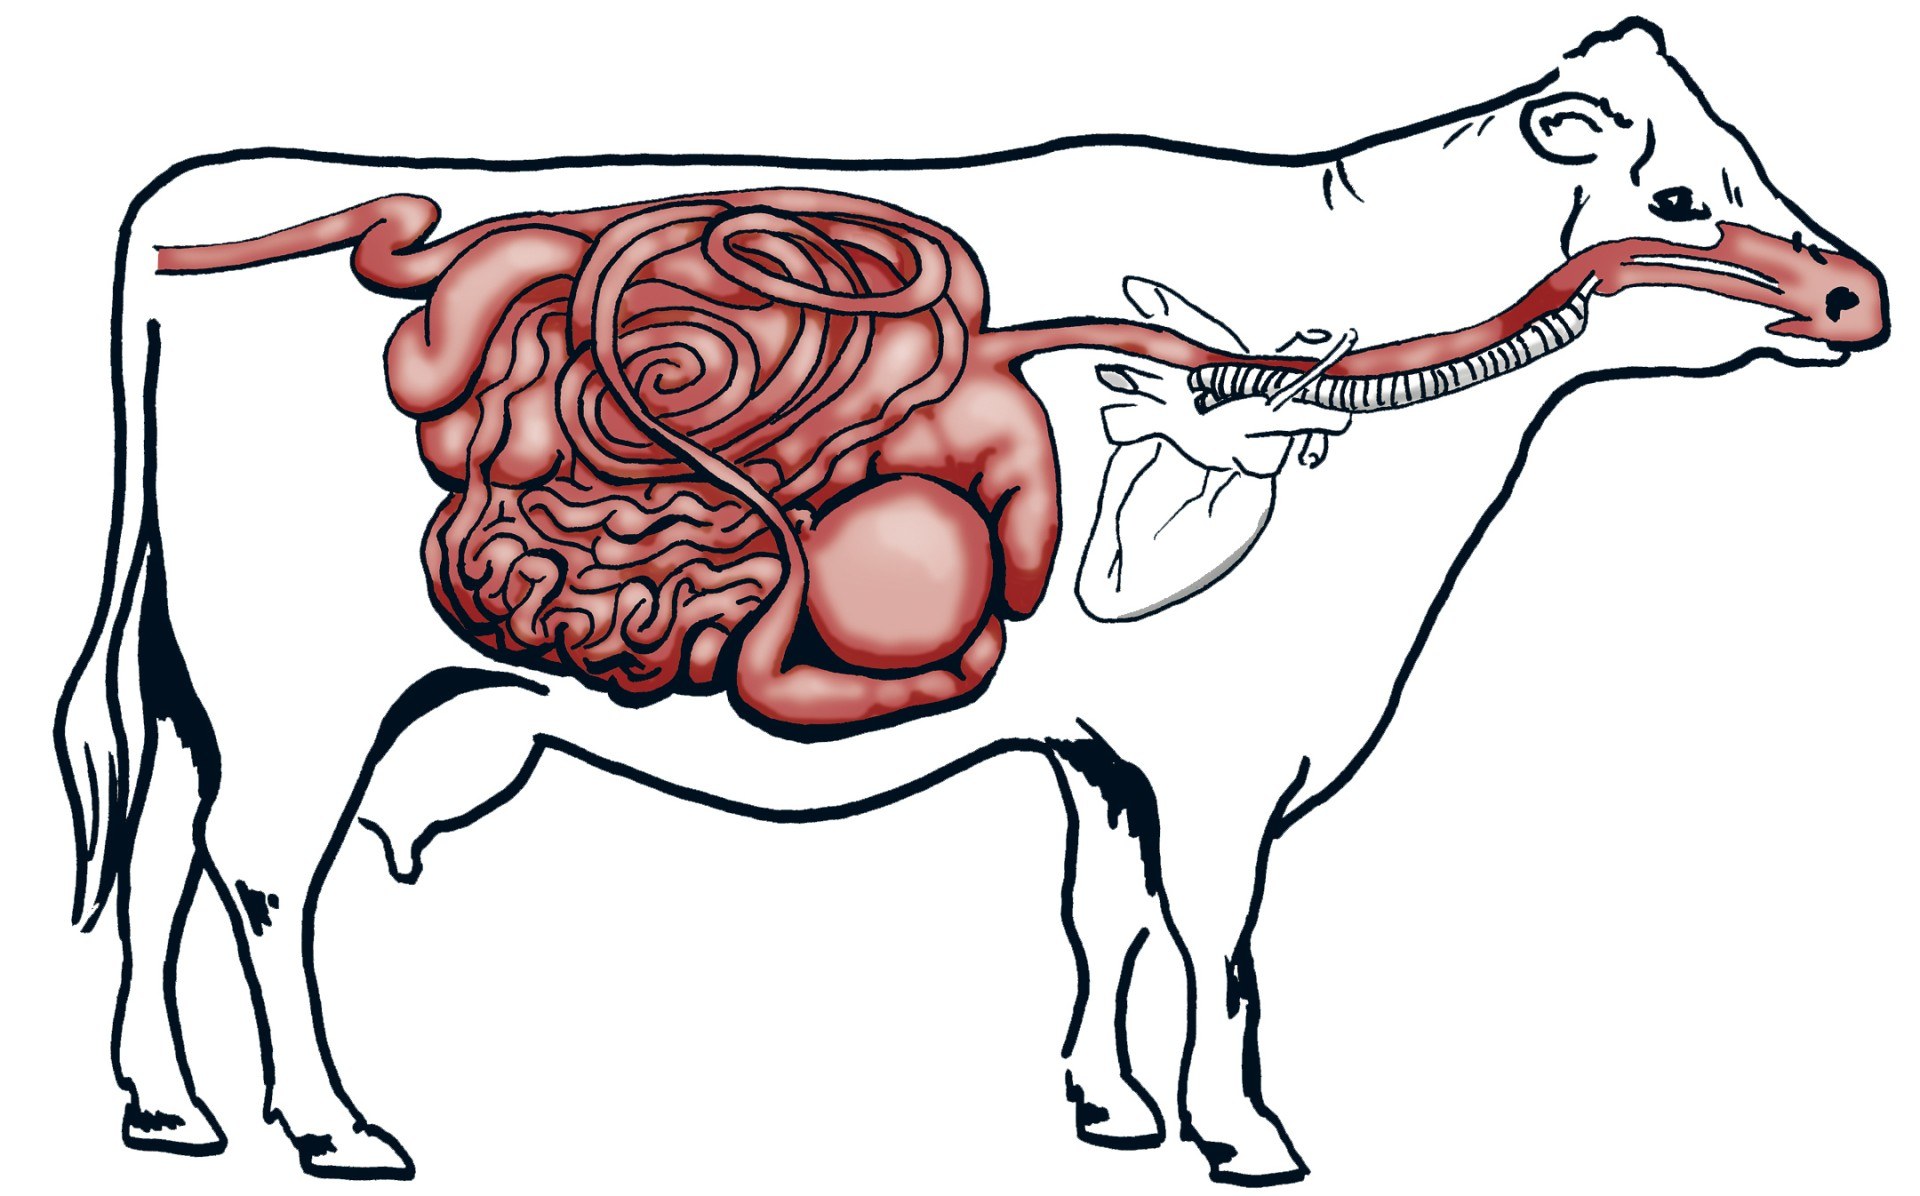 Пищевод у крс. Пищеварительный тракт коровы. Анатомия преджелудков коровы. Пищеварительная система жвачных. Желудочно-кишечный тракт крупного рогатого скота.